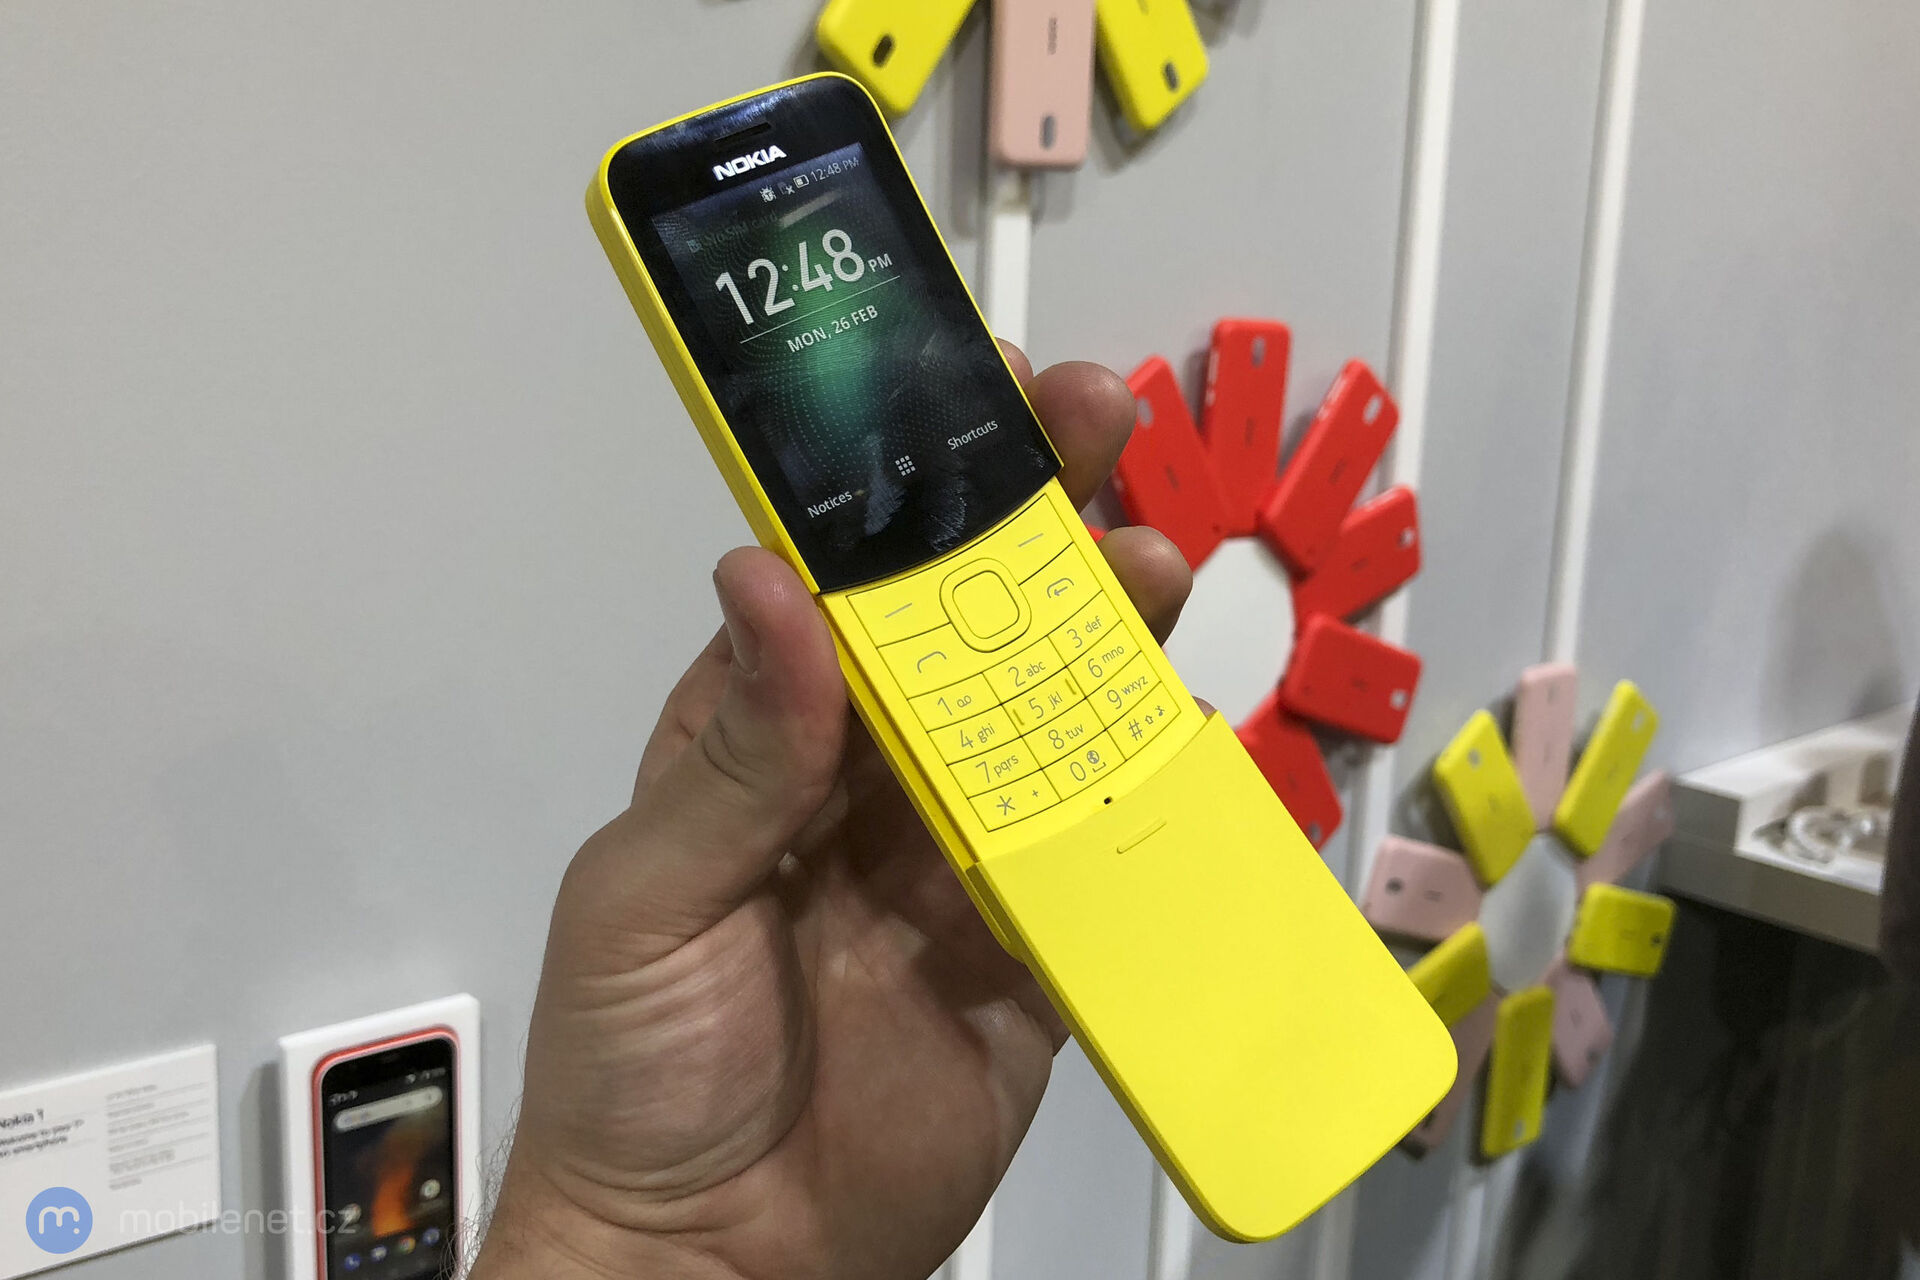 Nokia 8110 (2018)